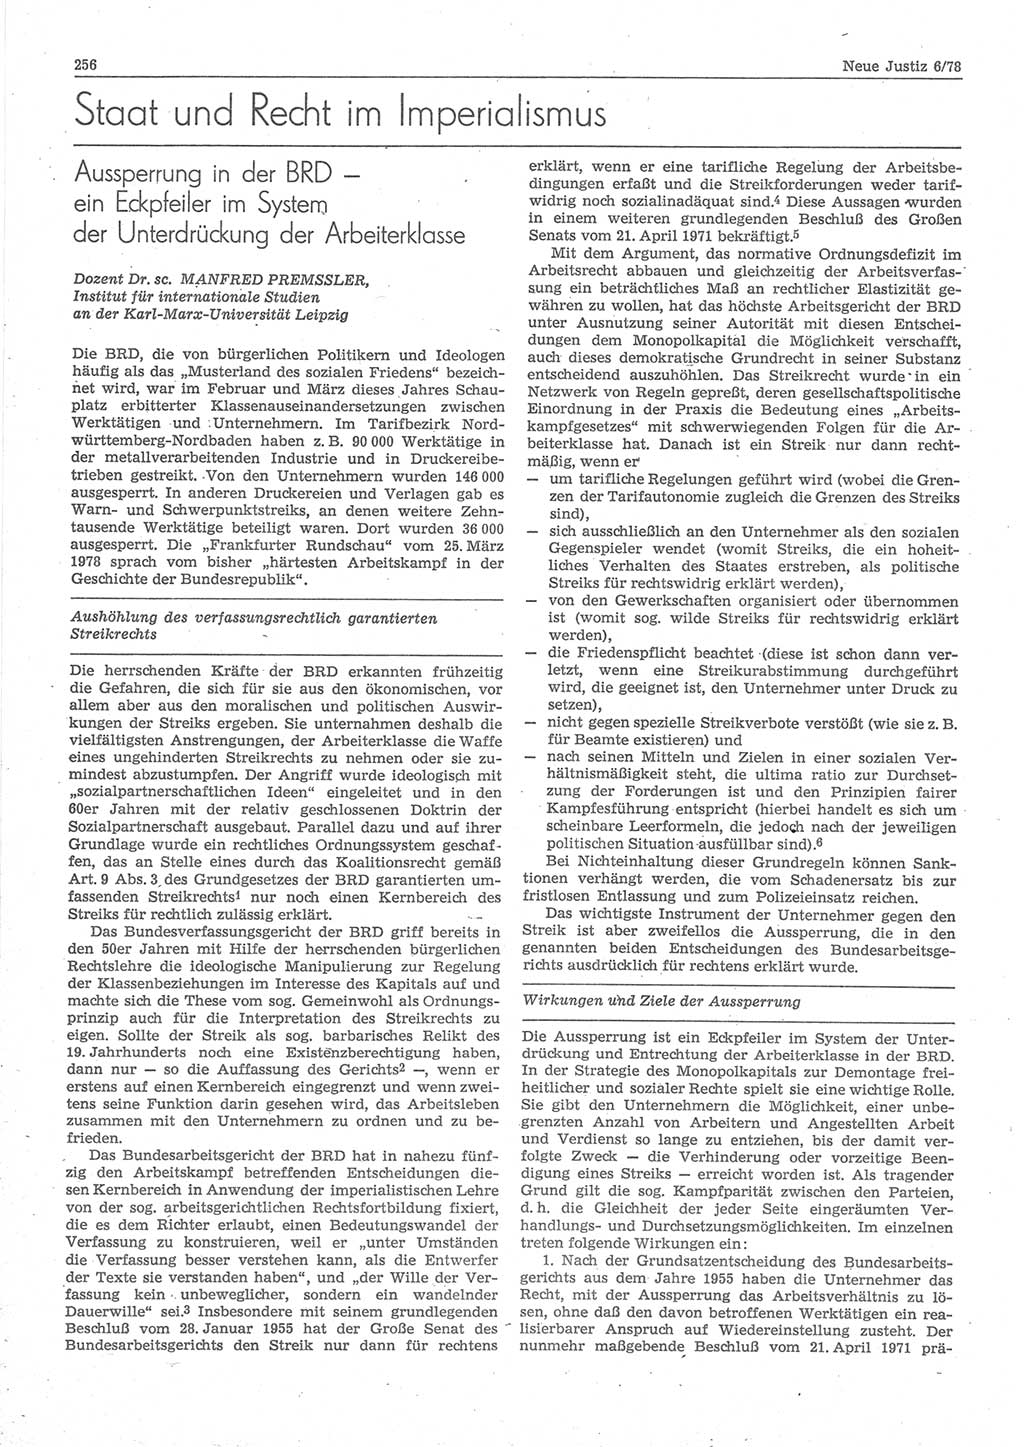 Neue Justiz (NJ), Zeitschrift für sozialistisches Recht und Gesetzlichkeit [Deutsche Demokratische Republik (DDR)], 32. Jahrgang 1978, Seite 256 (NJ DDR 1978, S. 256)